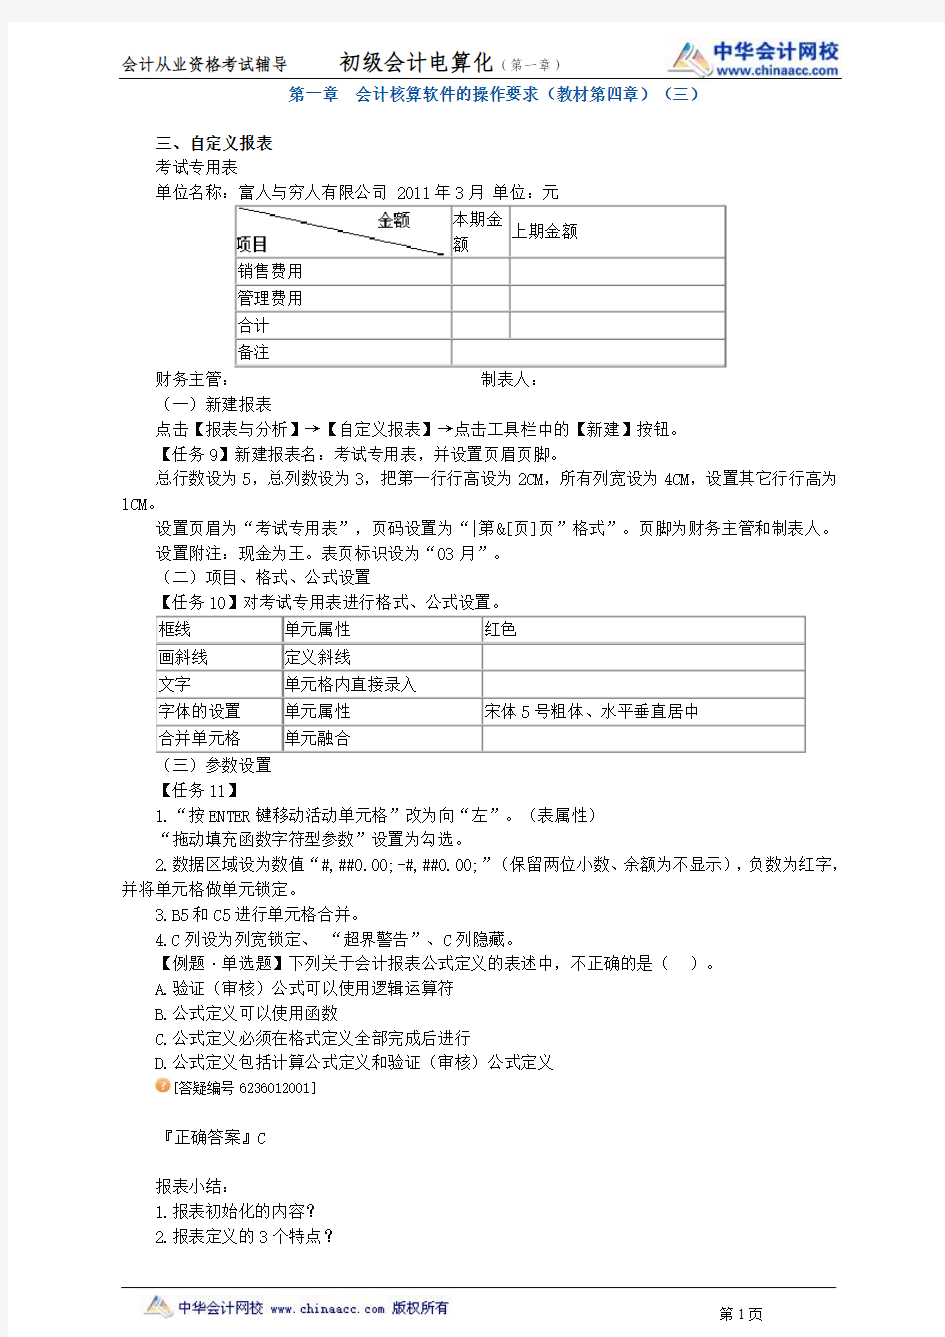 中华会计网校2013年贵州会计从业考试《会计电算化》基础班讲义第一章3